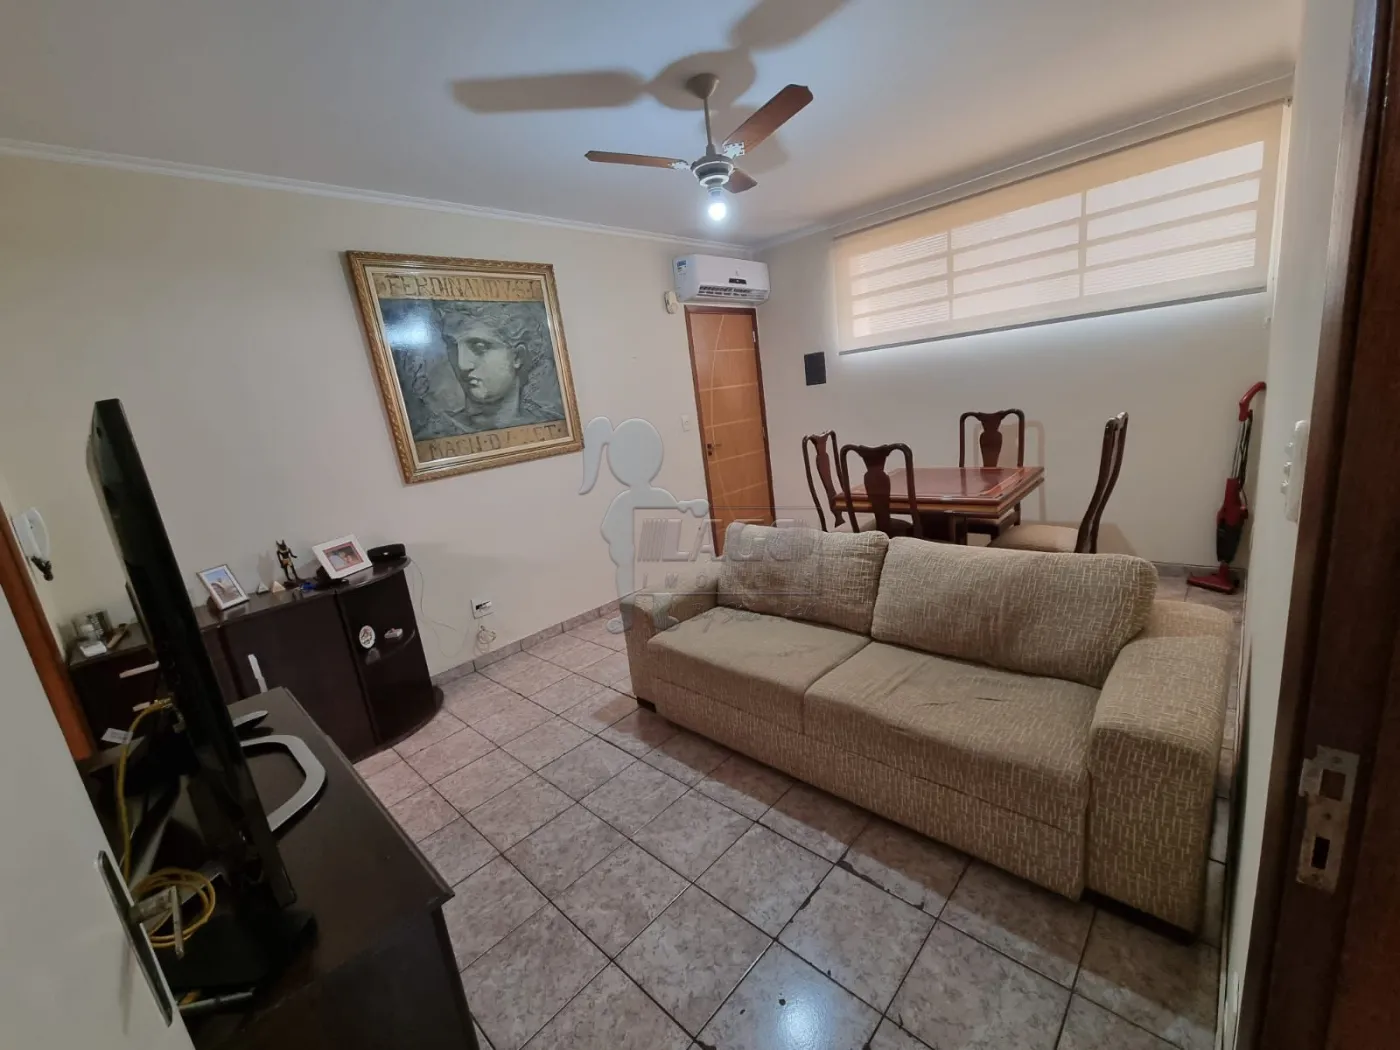 Comprar Apartamentos / Padrão em Ribeirão Preto R$ 159.000,00 - Foto 1